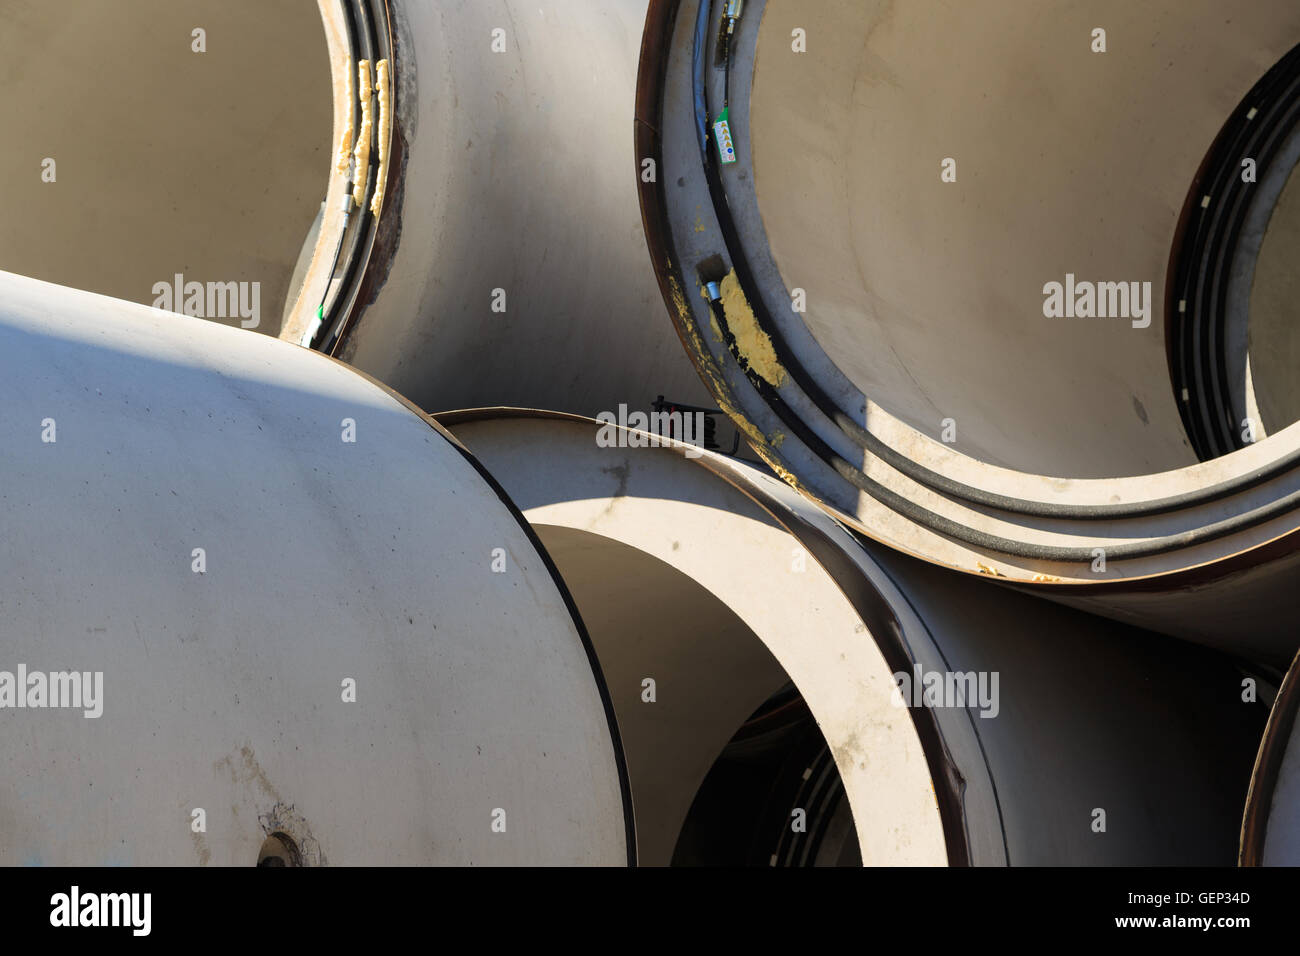 Una fotografia di alcuni tubi di cemento per micro-tunneling durante la produzione. Questi tubi sono tre metri di diametro. Foto Stock